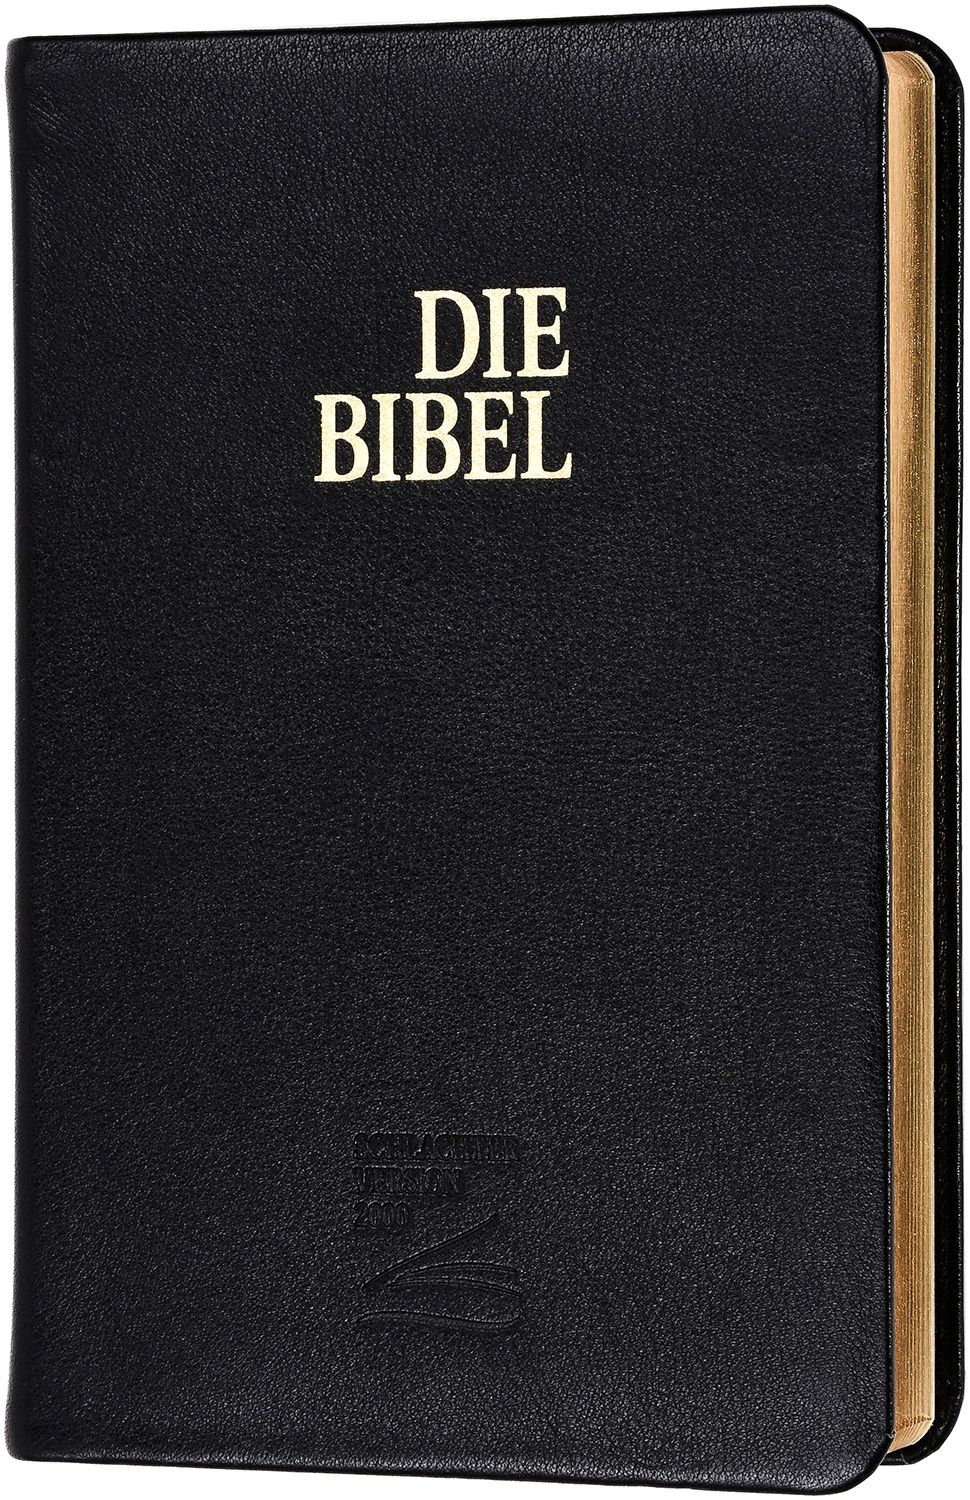 SCHLACHTER 2000 BIBEL MIT STUDIENFÜHRER, FIBROLEDER, GOLDSCHNITT, SCHWARZ